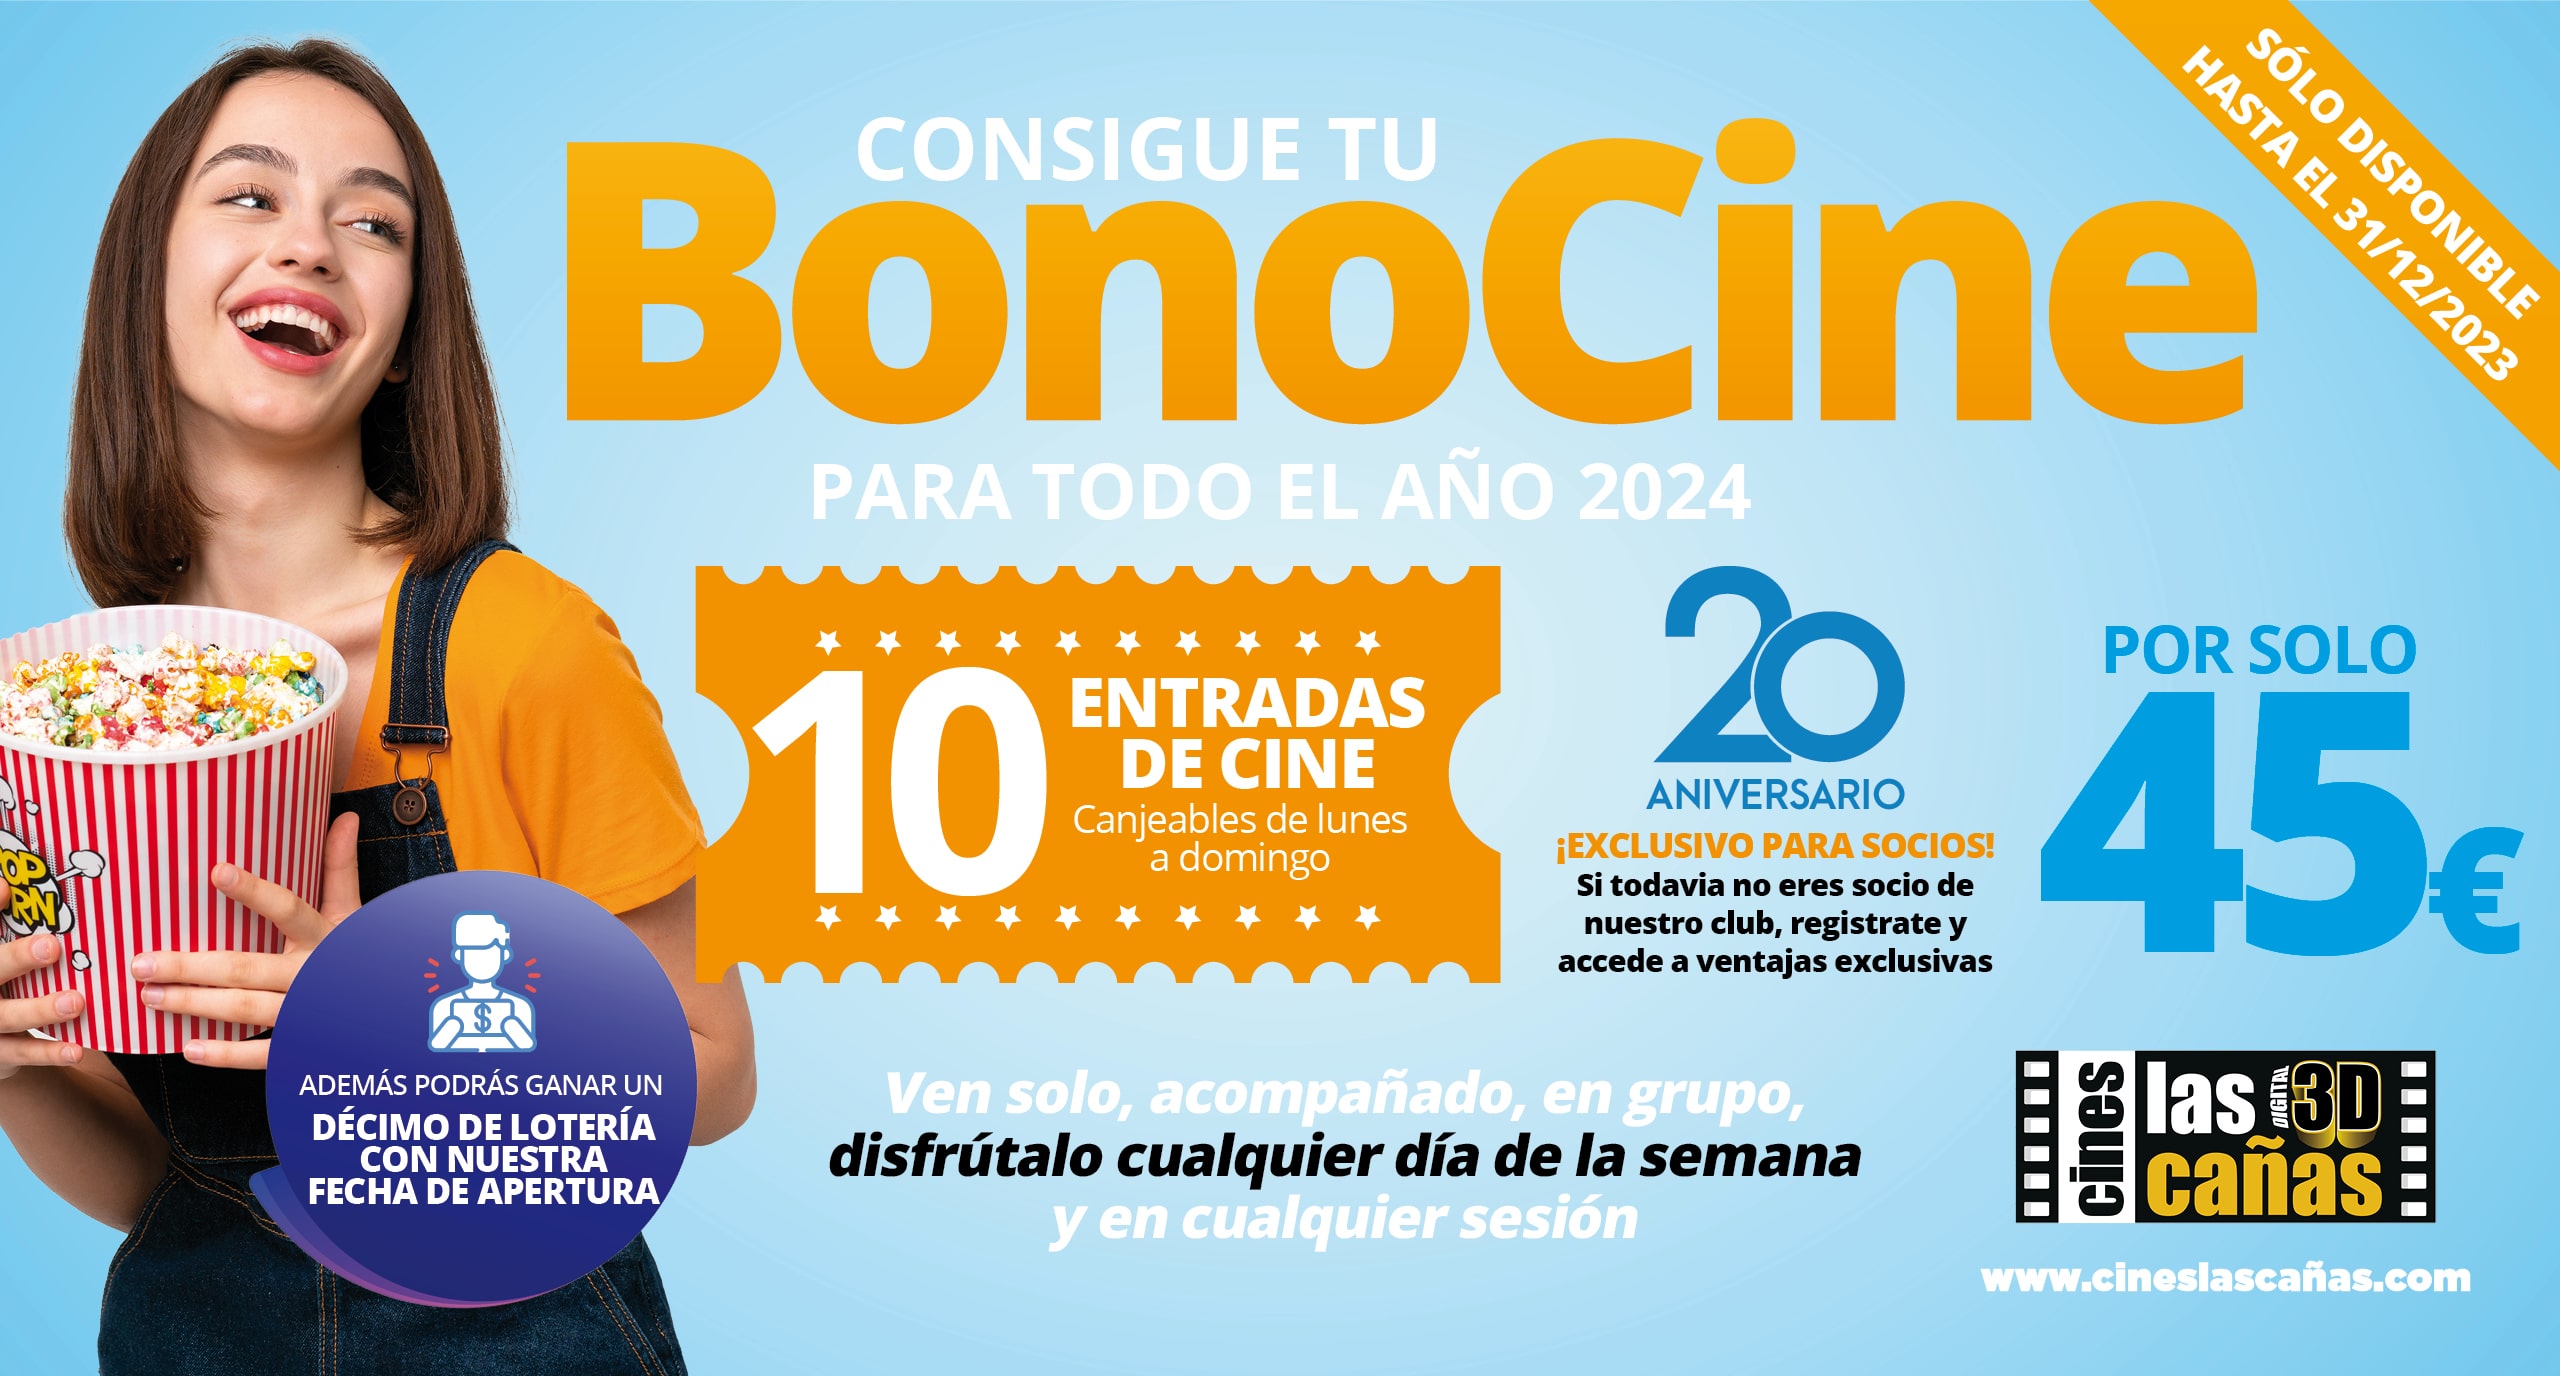 ¡Consigue tu BonoCine para todo el año 2024!